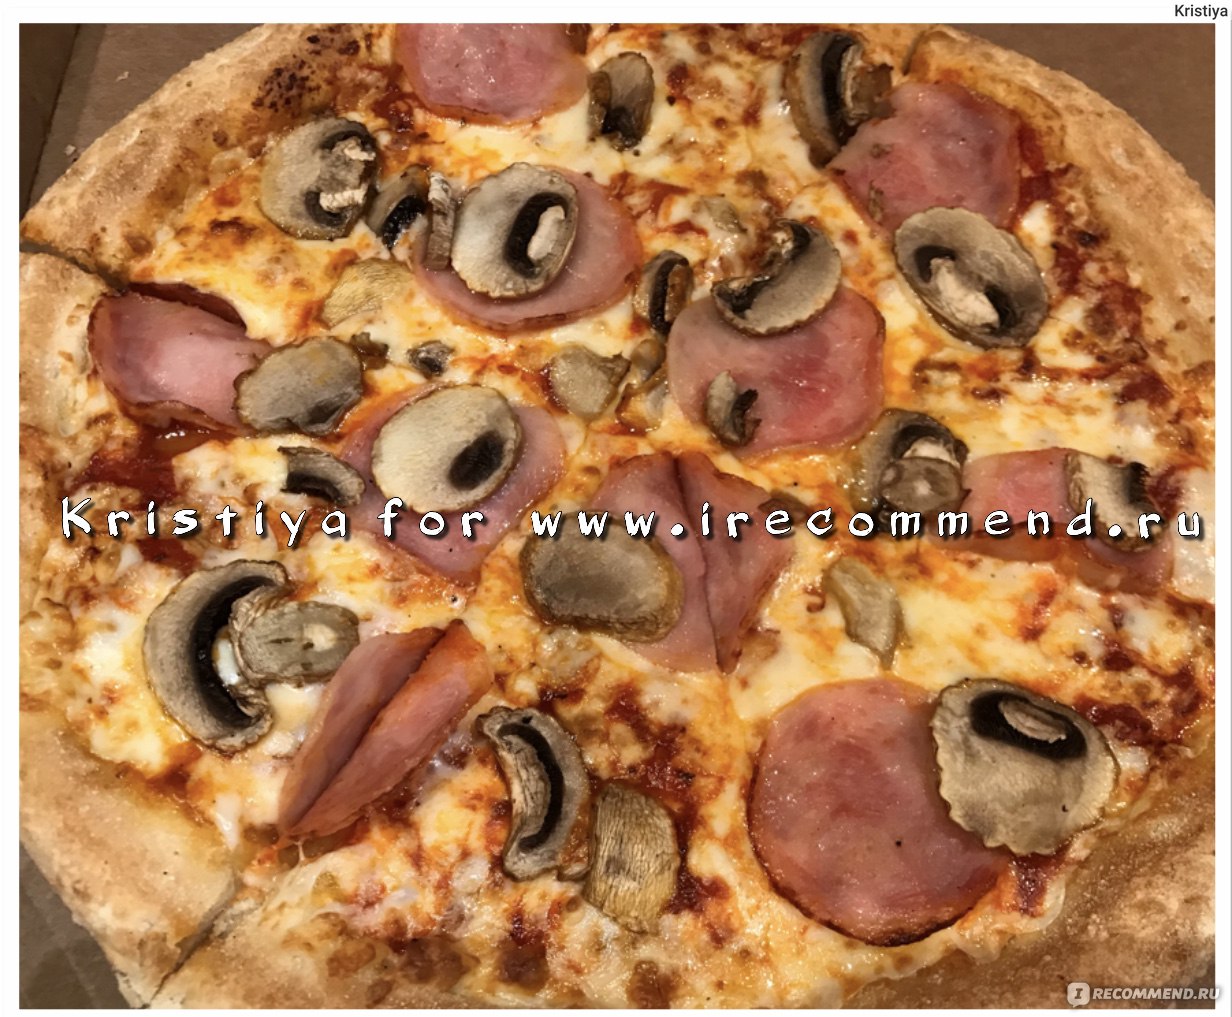 Додо пицца Ветчина и грибы как выглядит в реале